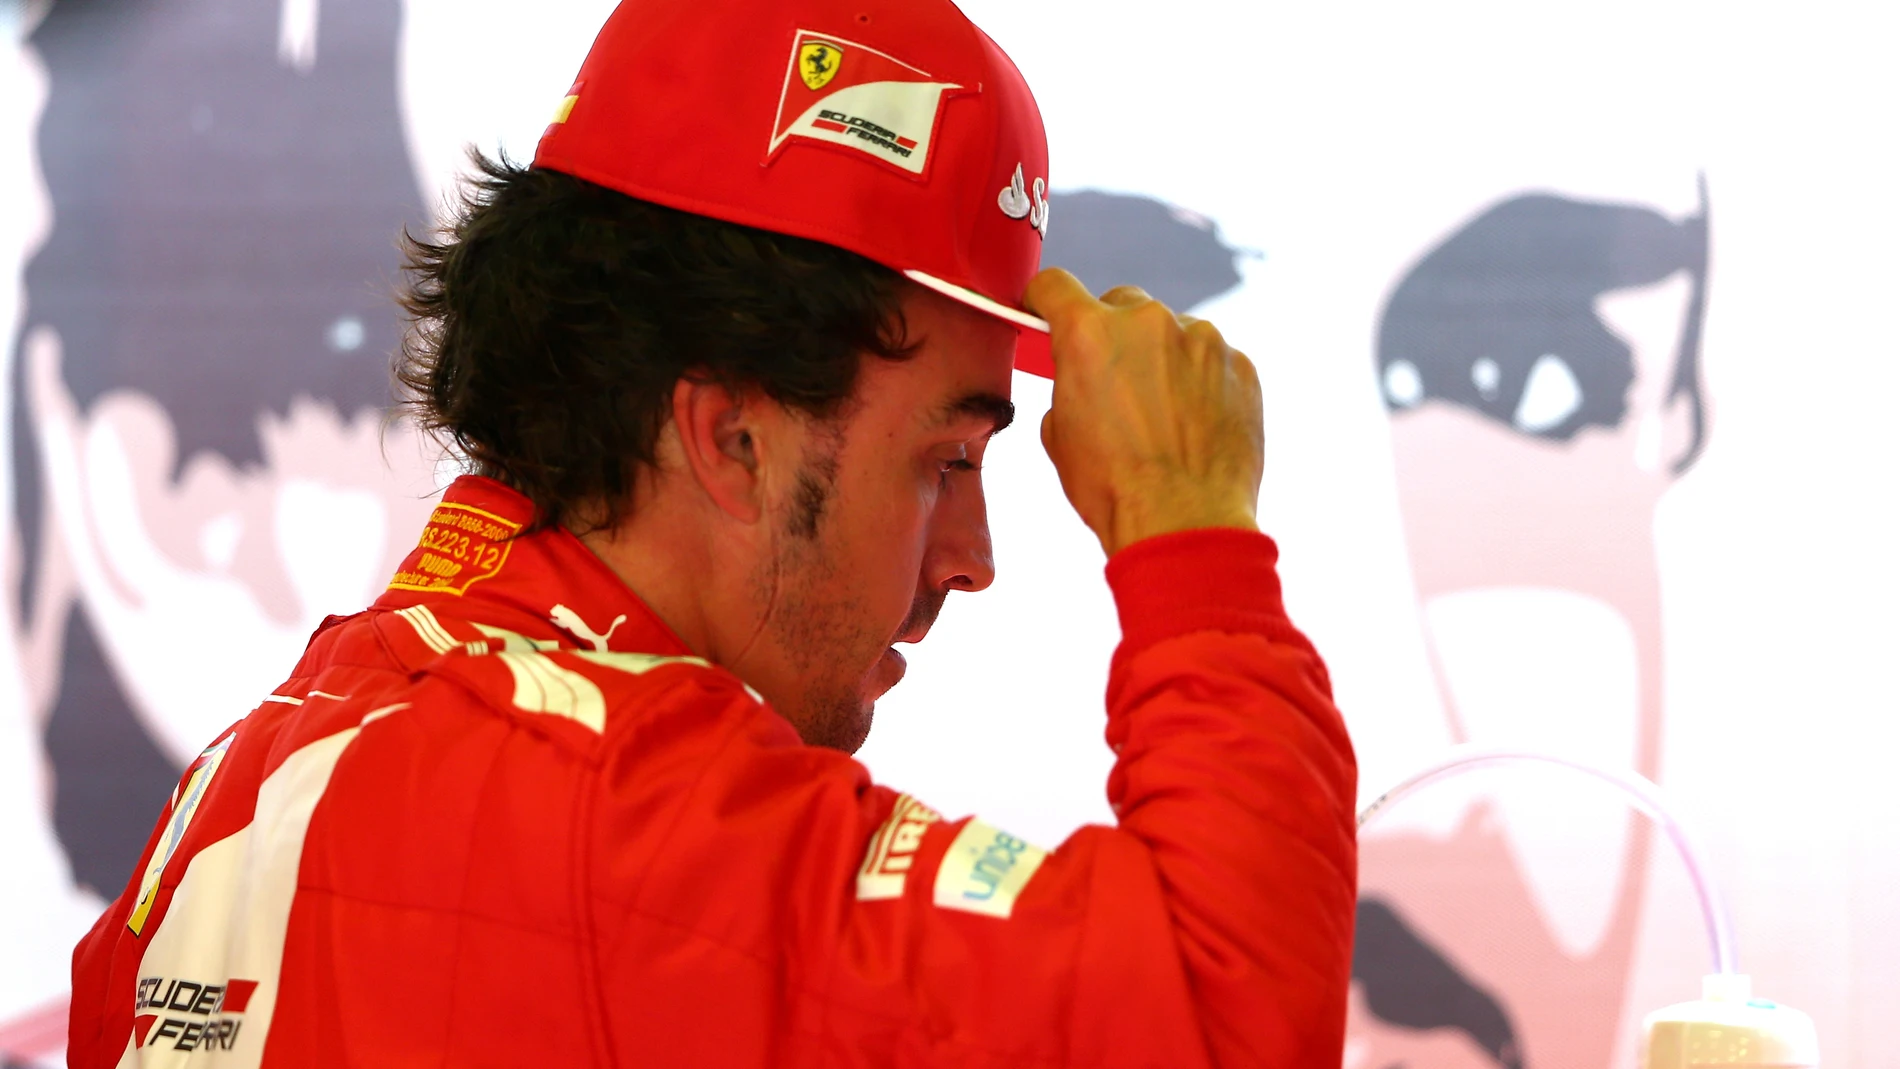 Fernando Alonso, en el box de Ferrari